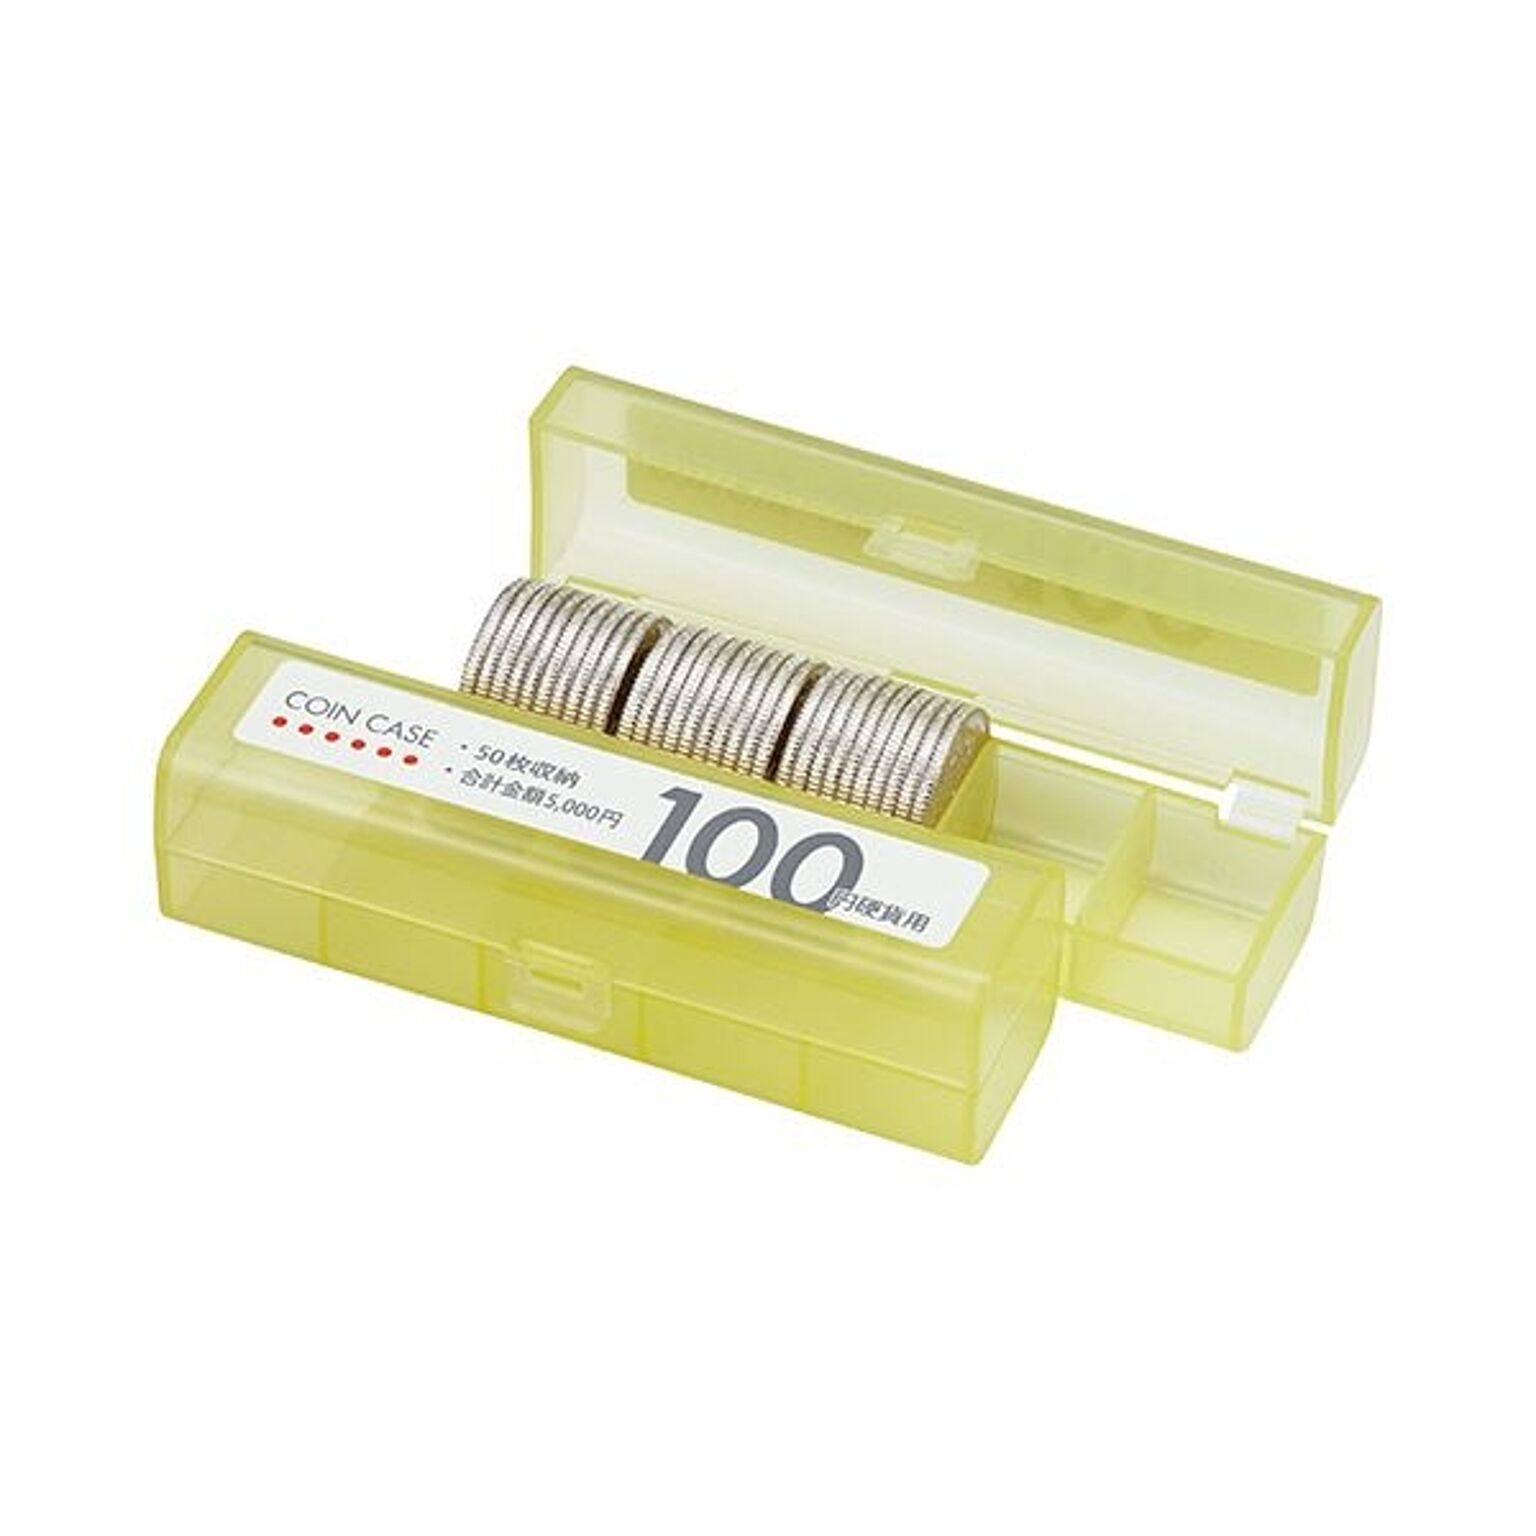 （まとめ） オープン工業 コインケース（50枚収納）100円硬貨用 黄 M-100 1個 【×50セット】